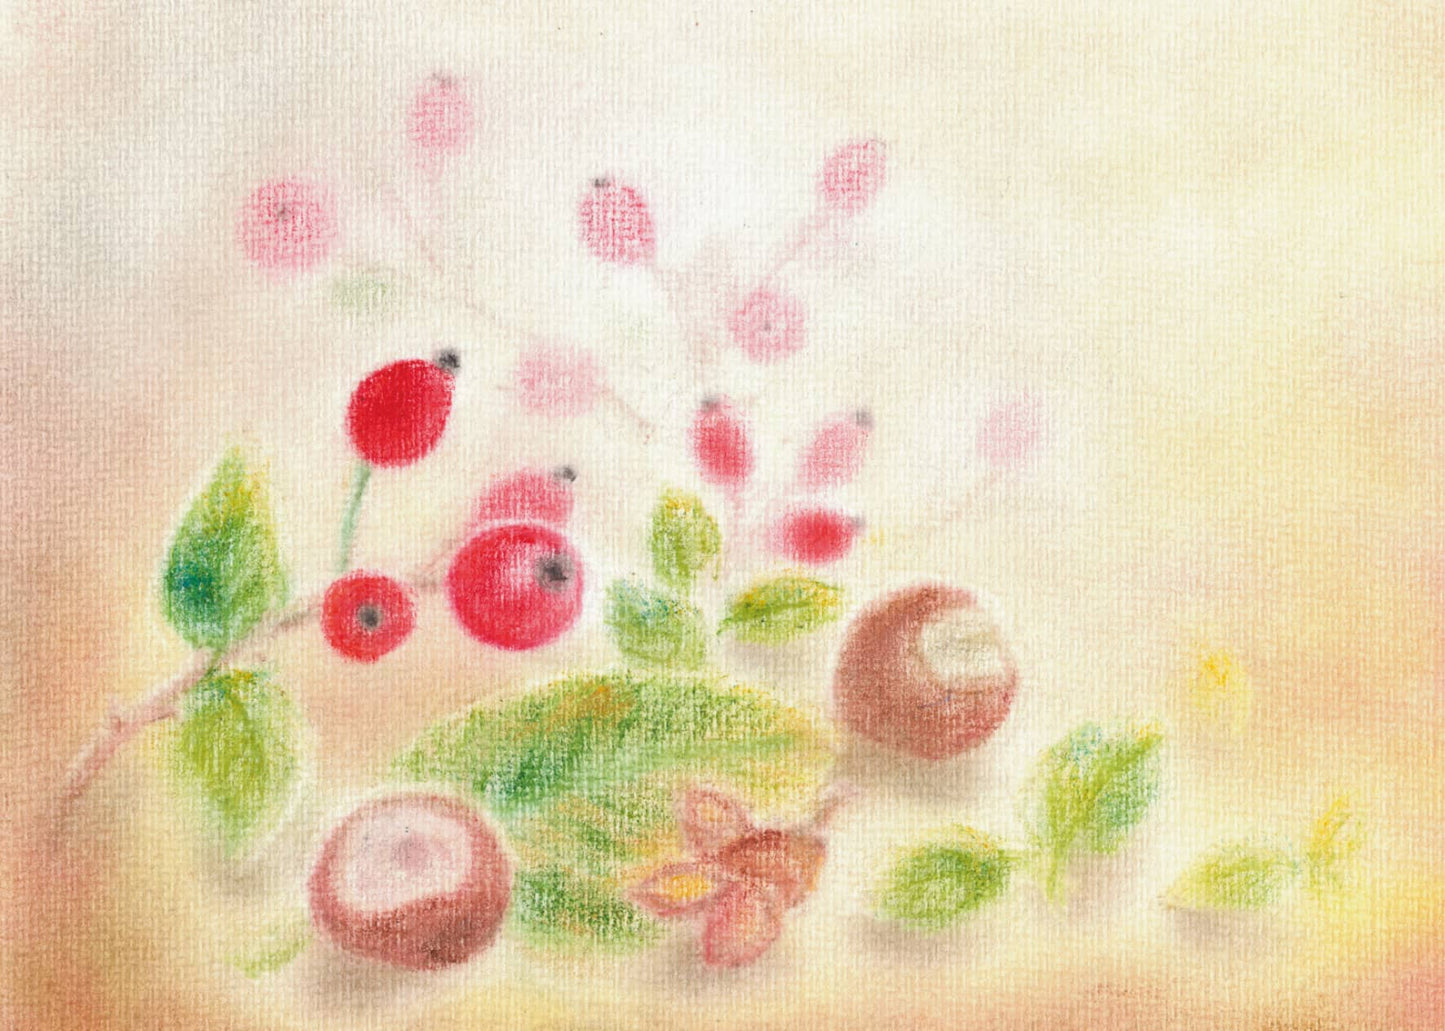 Seccorell-Postkarte "Hagebutten" mit leuchtenden roten Früchten und zarten Blättern auf hellem Hintergrund.